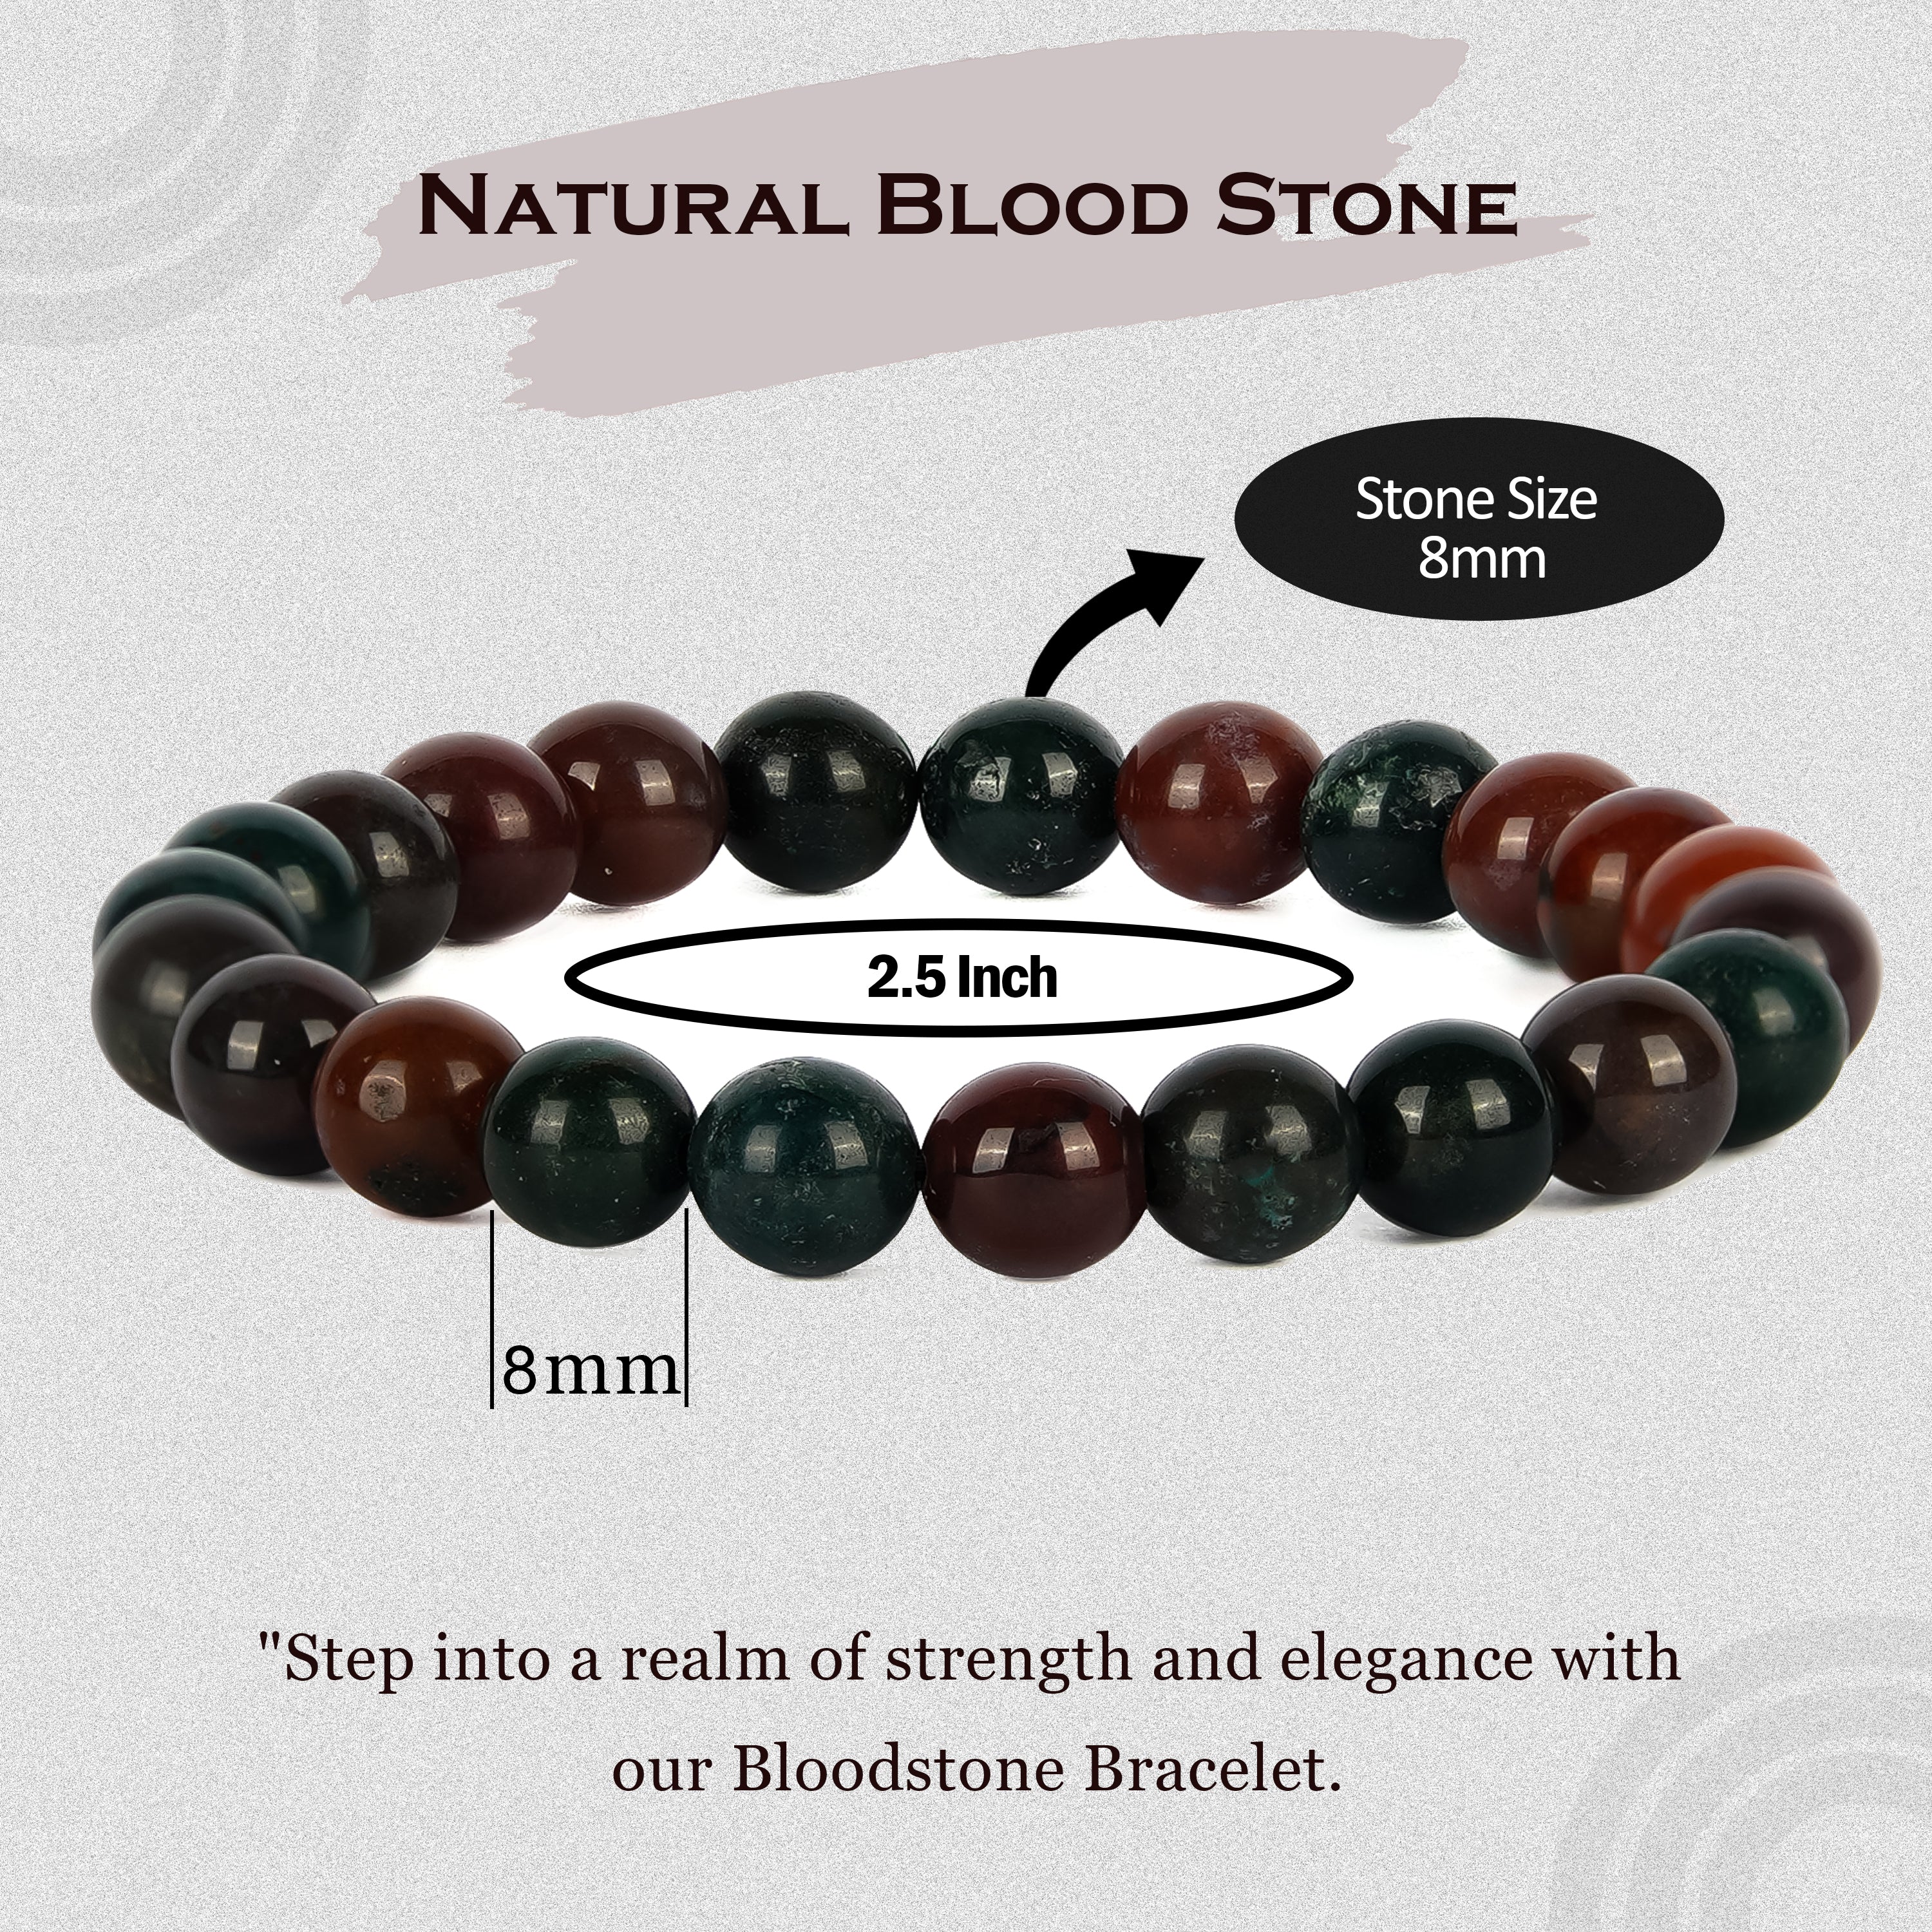 Bloodstone Bracelet